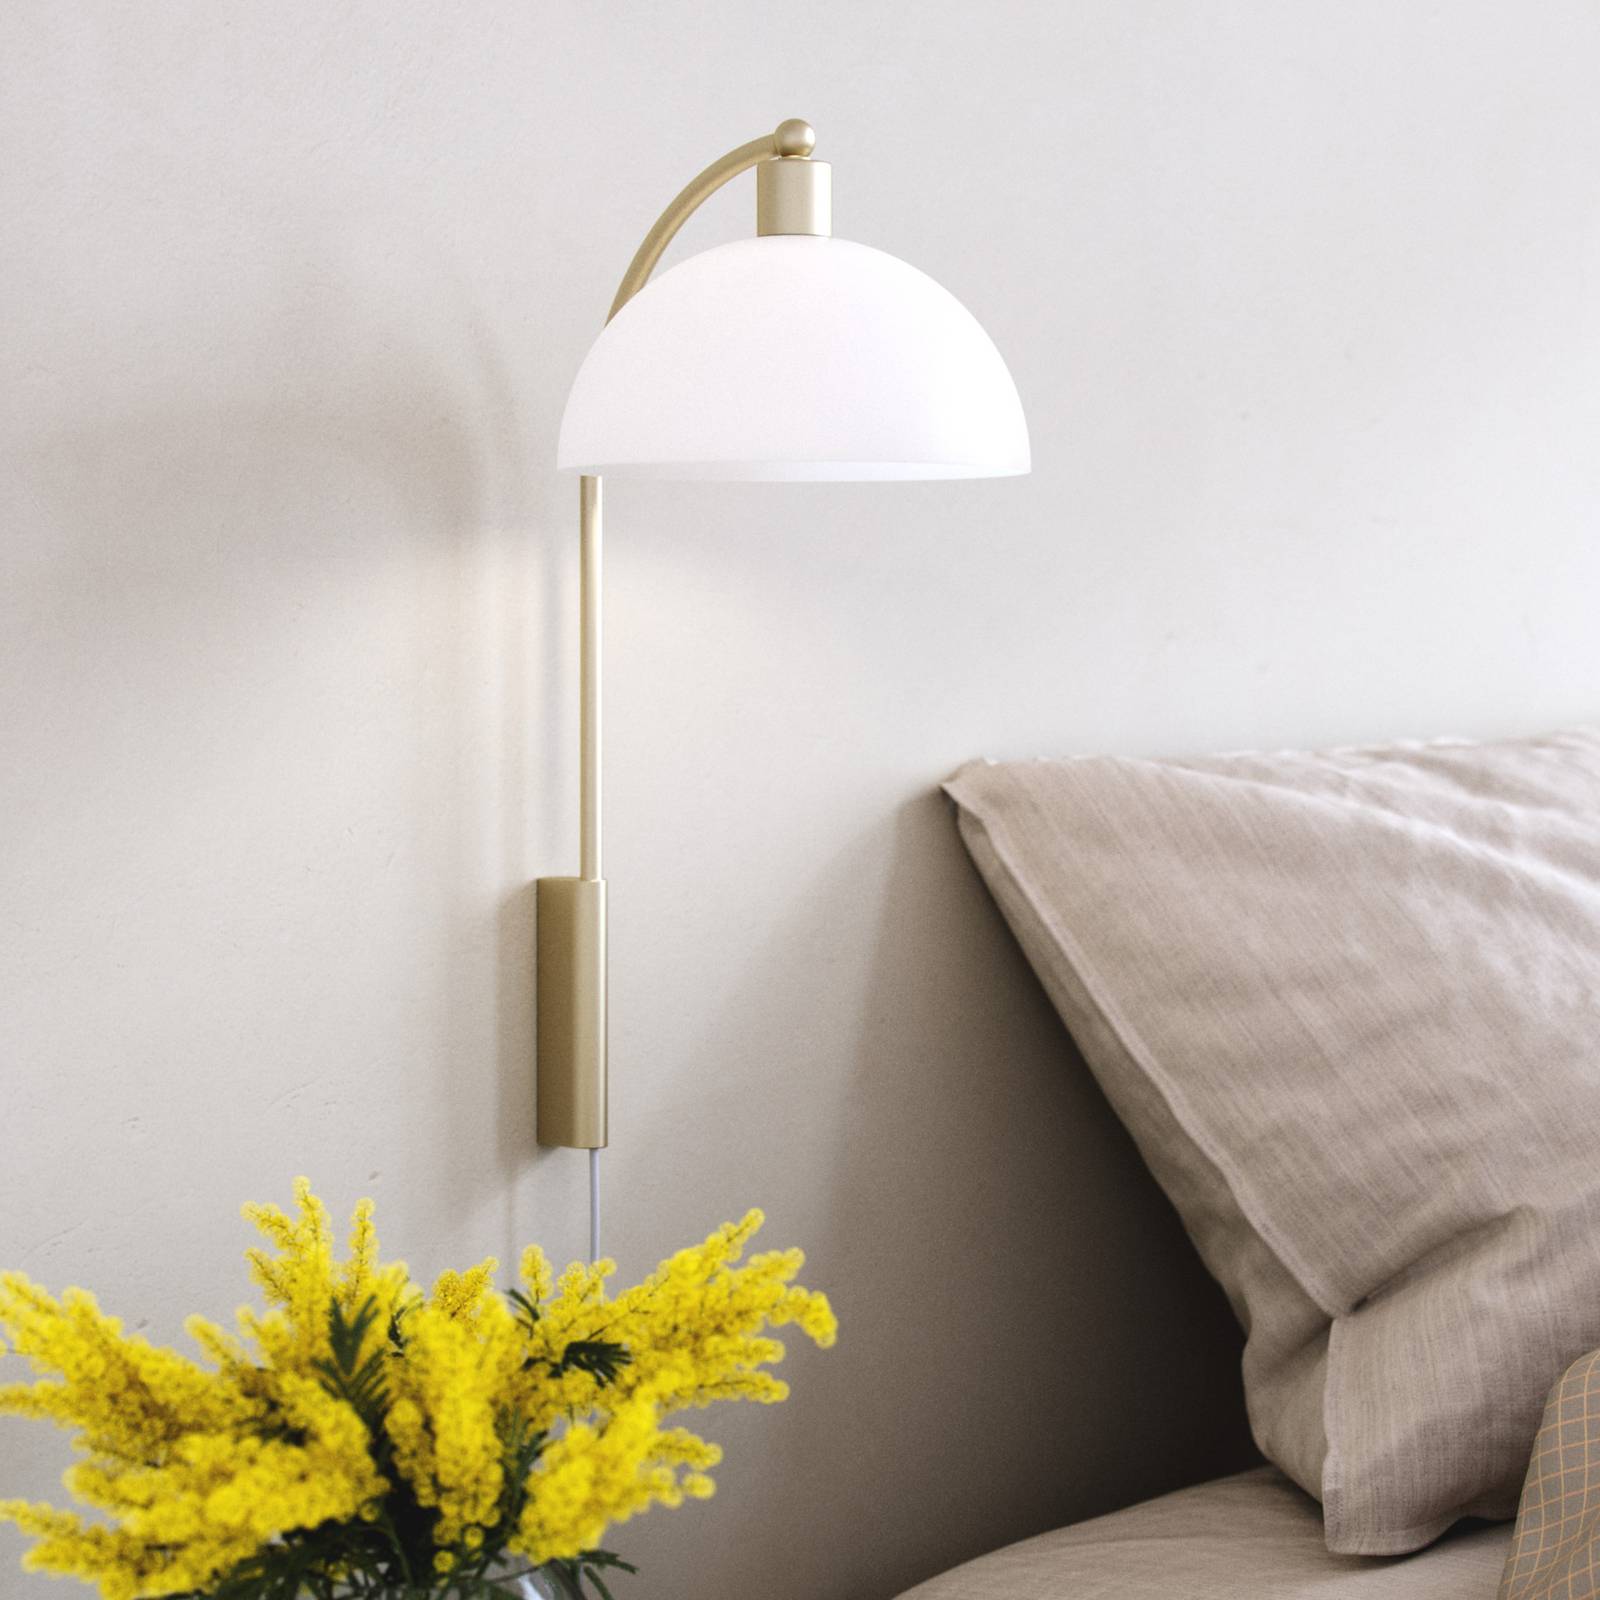 Nordlux fali világítás ellen 20 kábel+dugó, sárgaréz/fehér